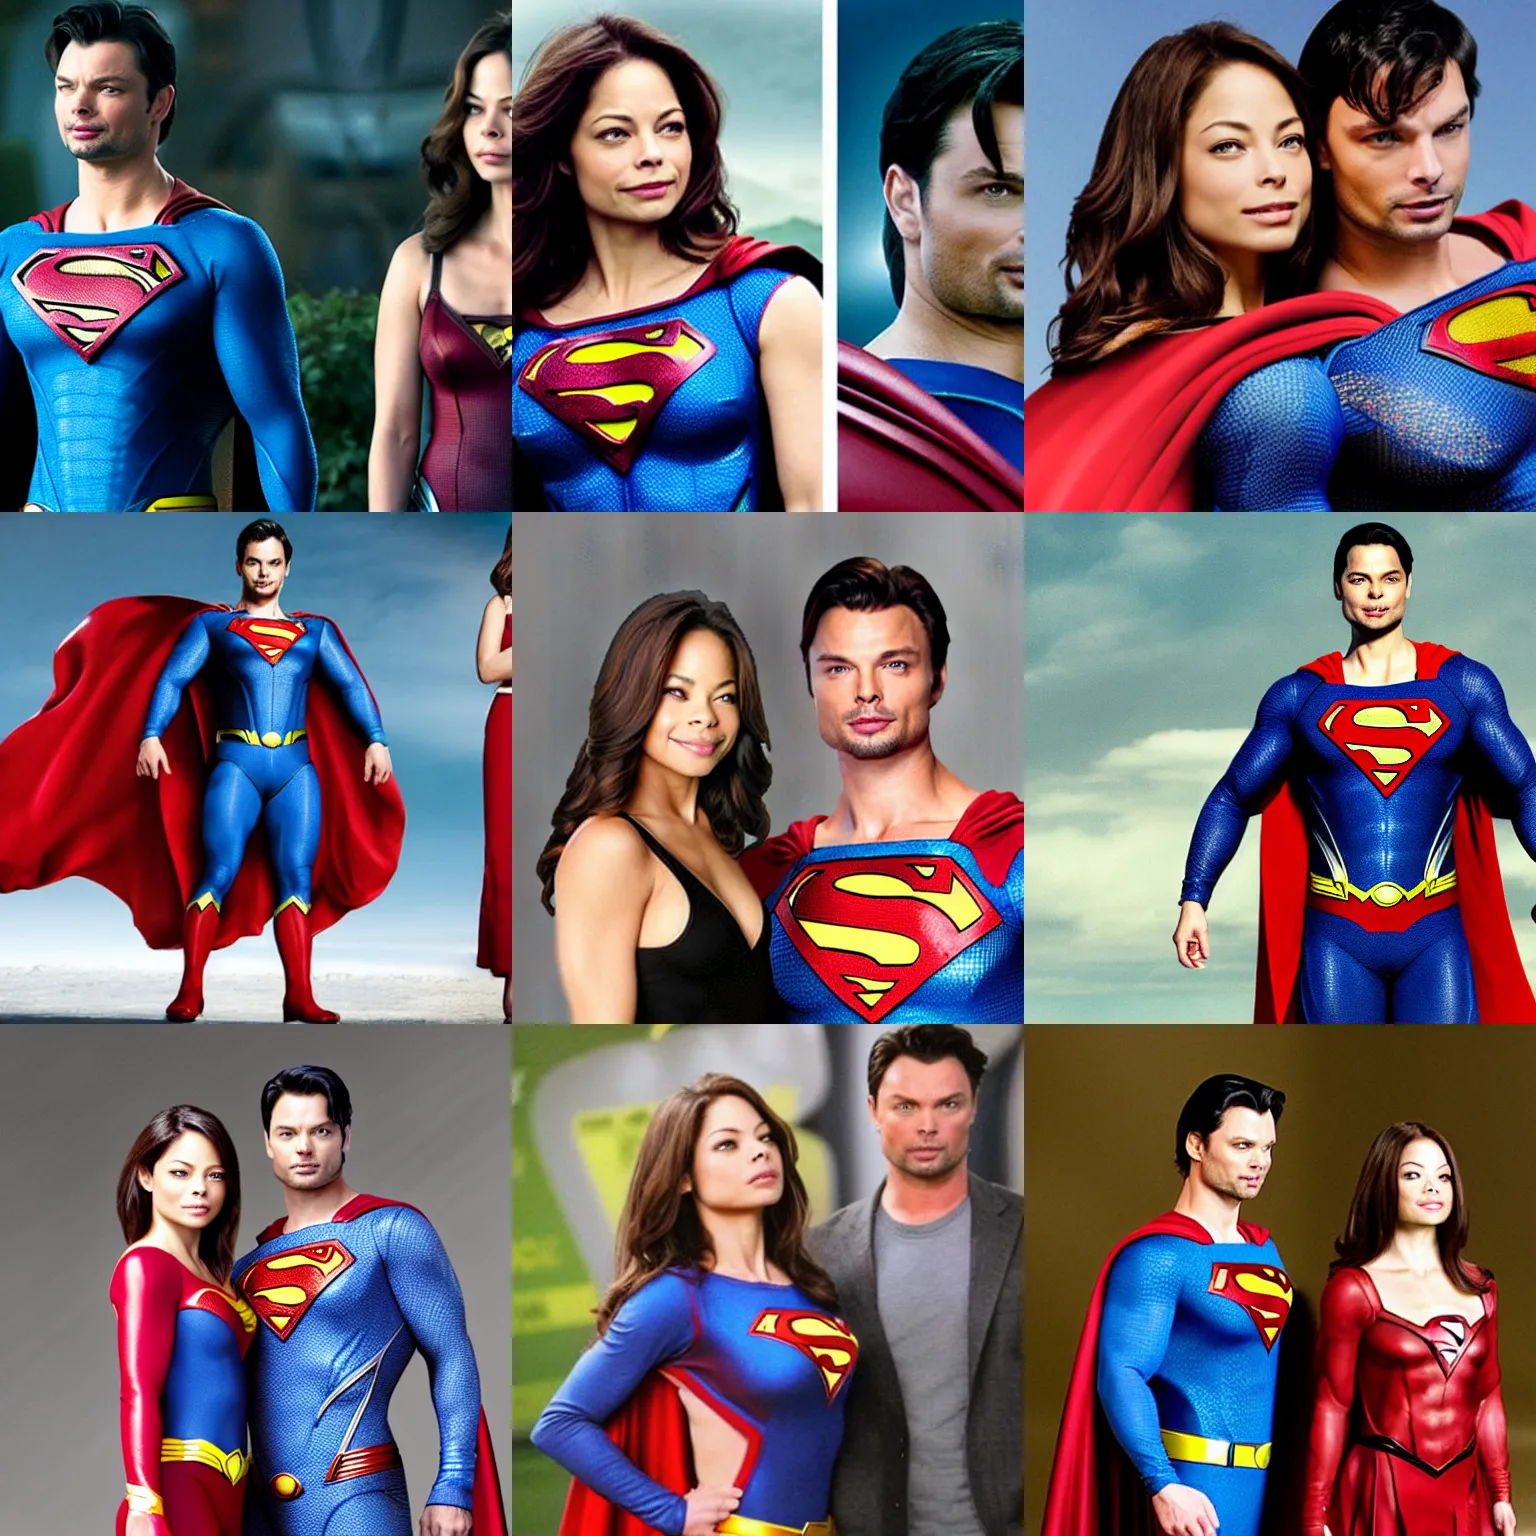 Prompt: Kristin Kreuk as Superman, next to Tom Welling as Lana Lang